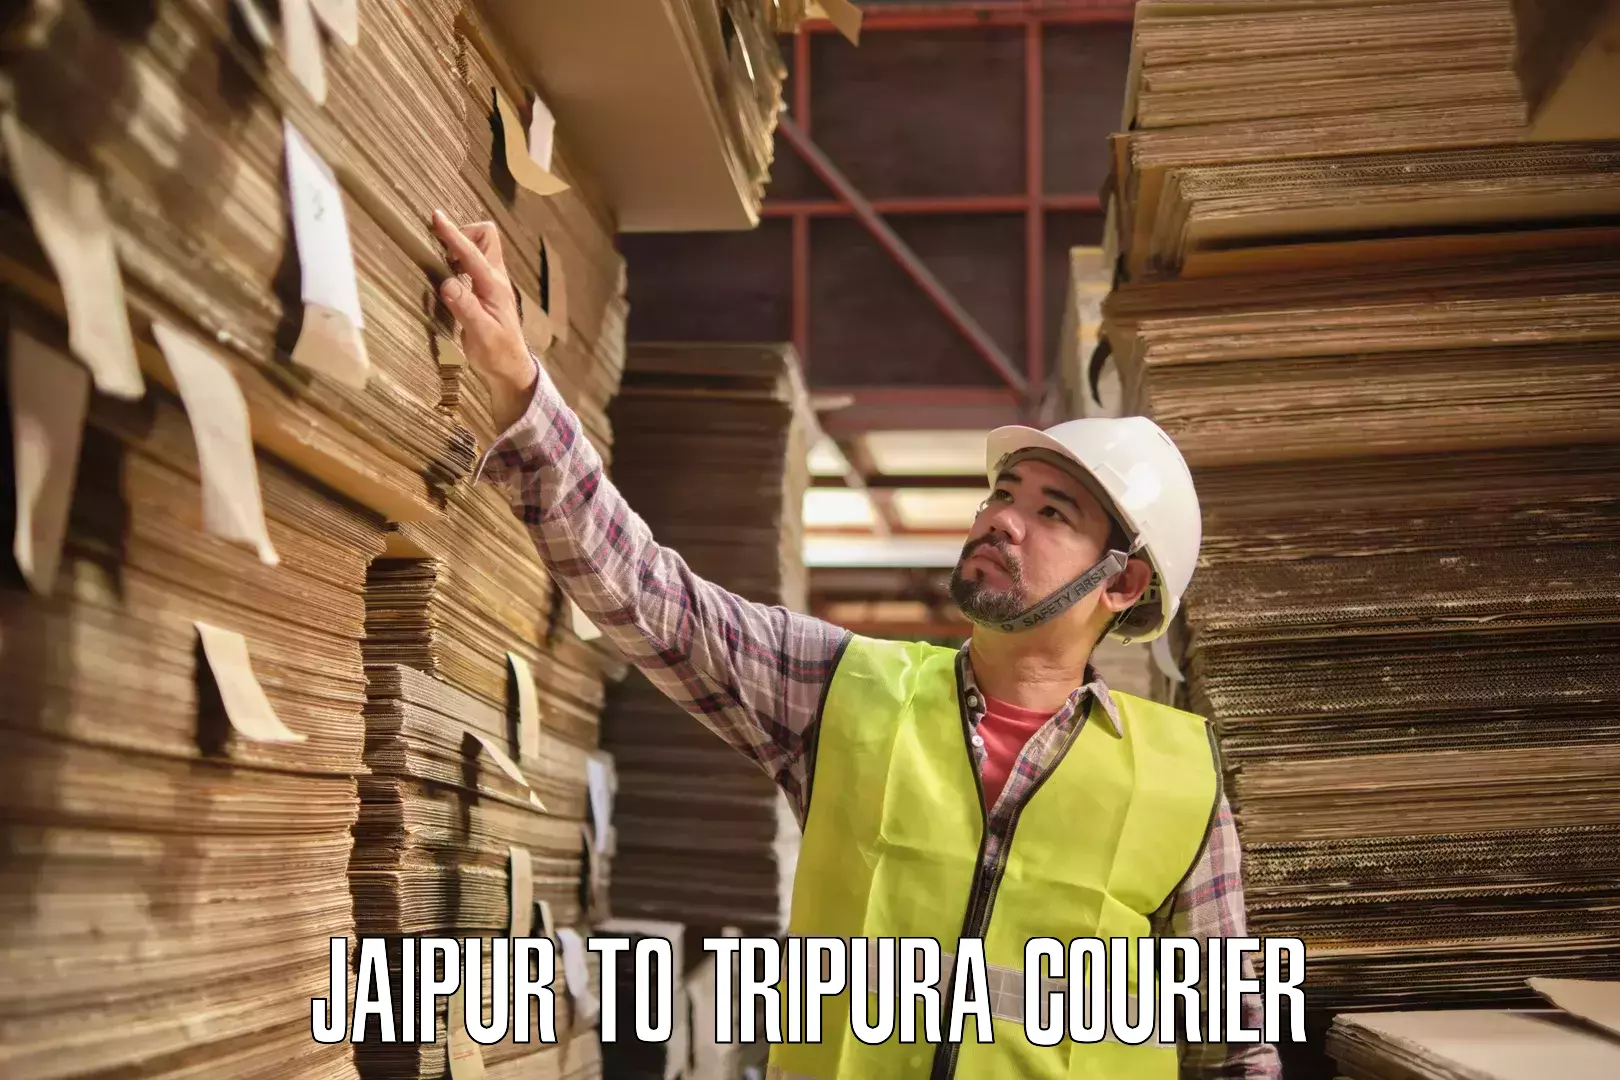 Courier service comparison Jaipur to Bishalgarh